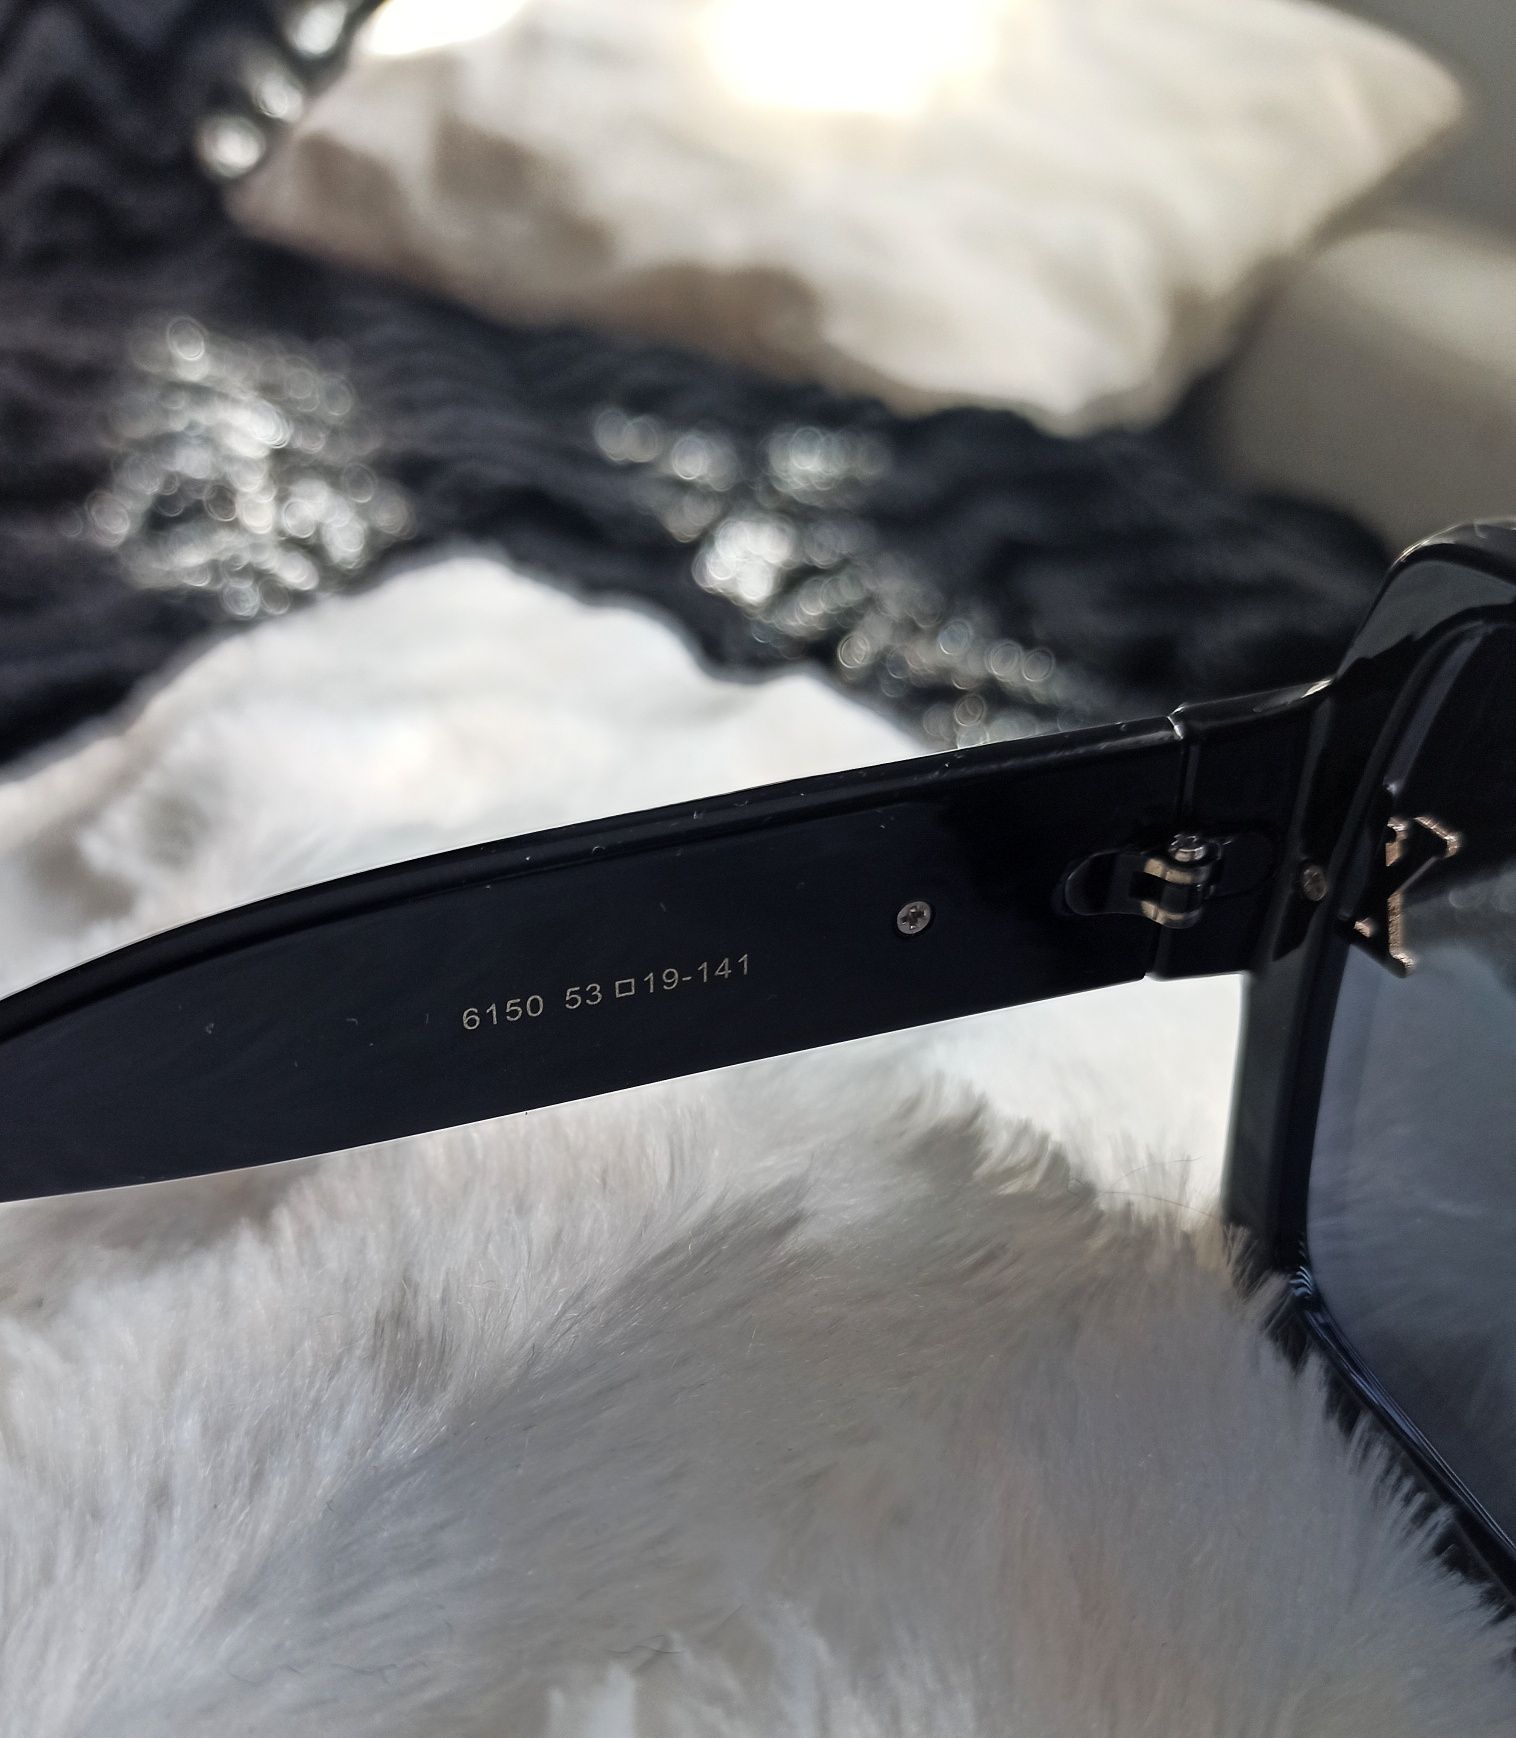 Okulary przeciwsłoneczne Louis Vuitton